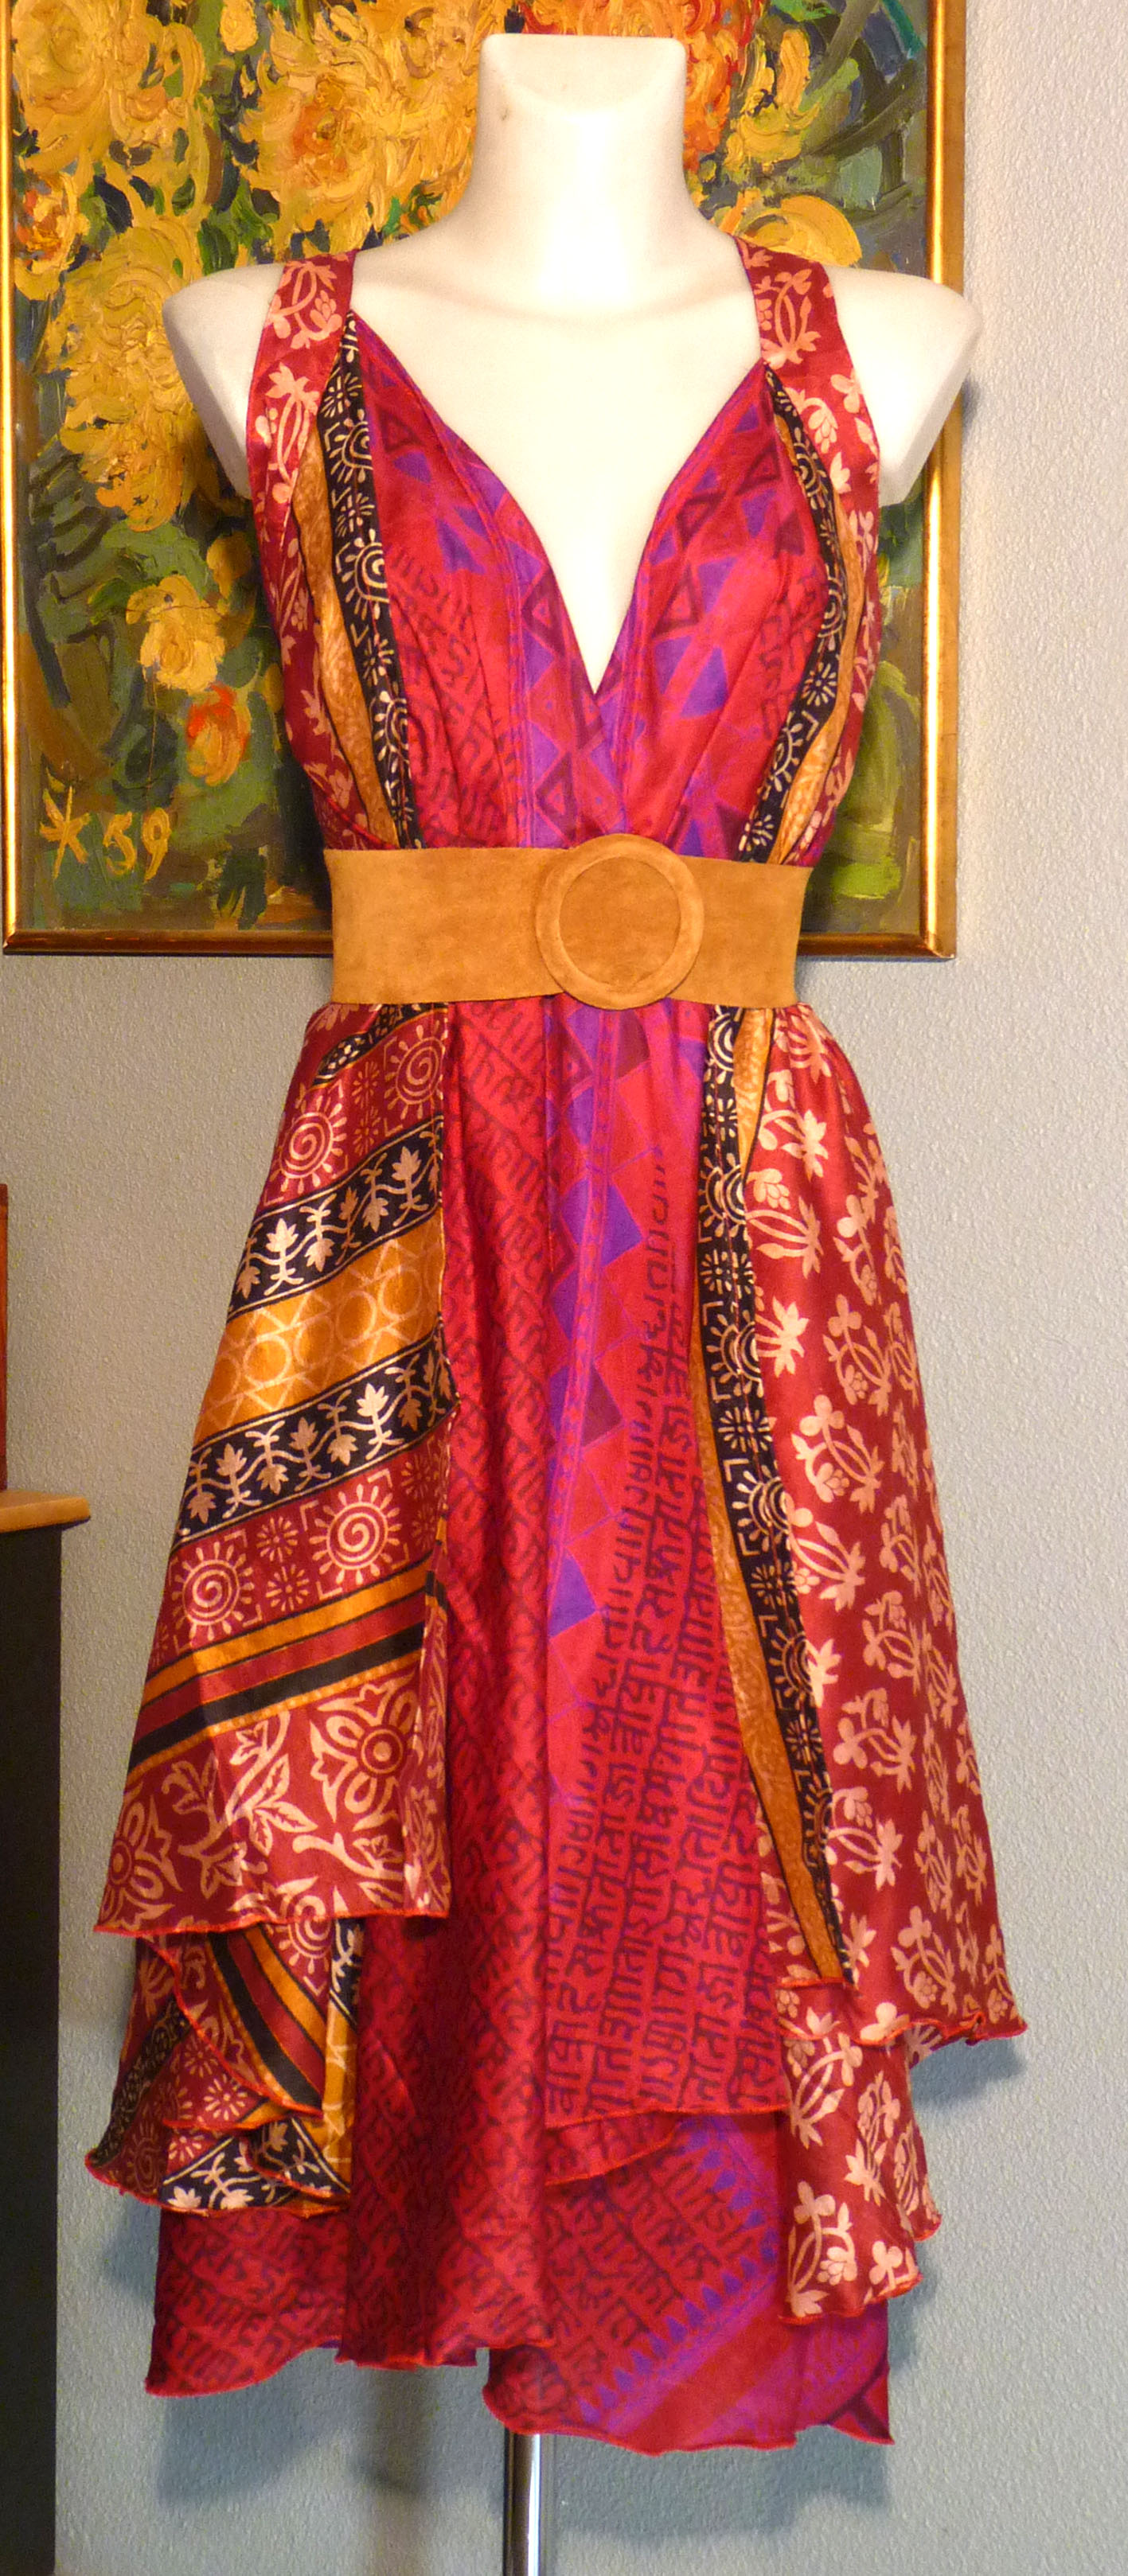 Large choix de jupes indiennes en soie, aux couleurs et imprimés